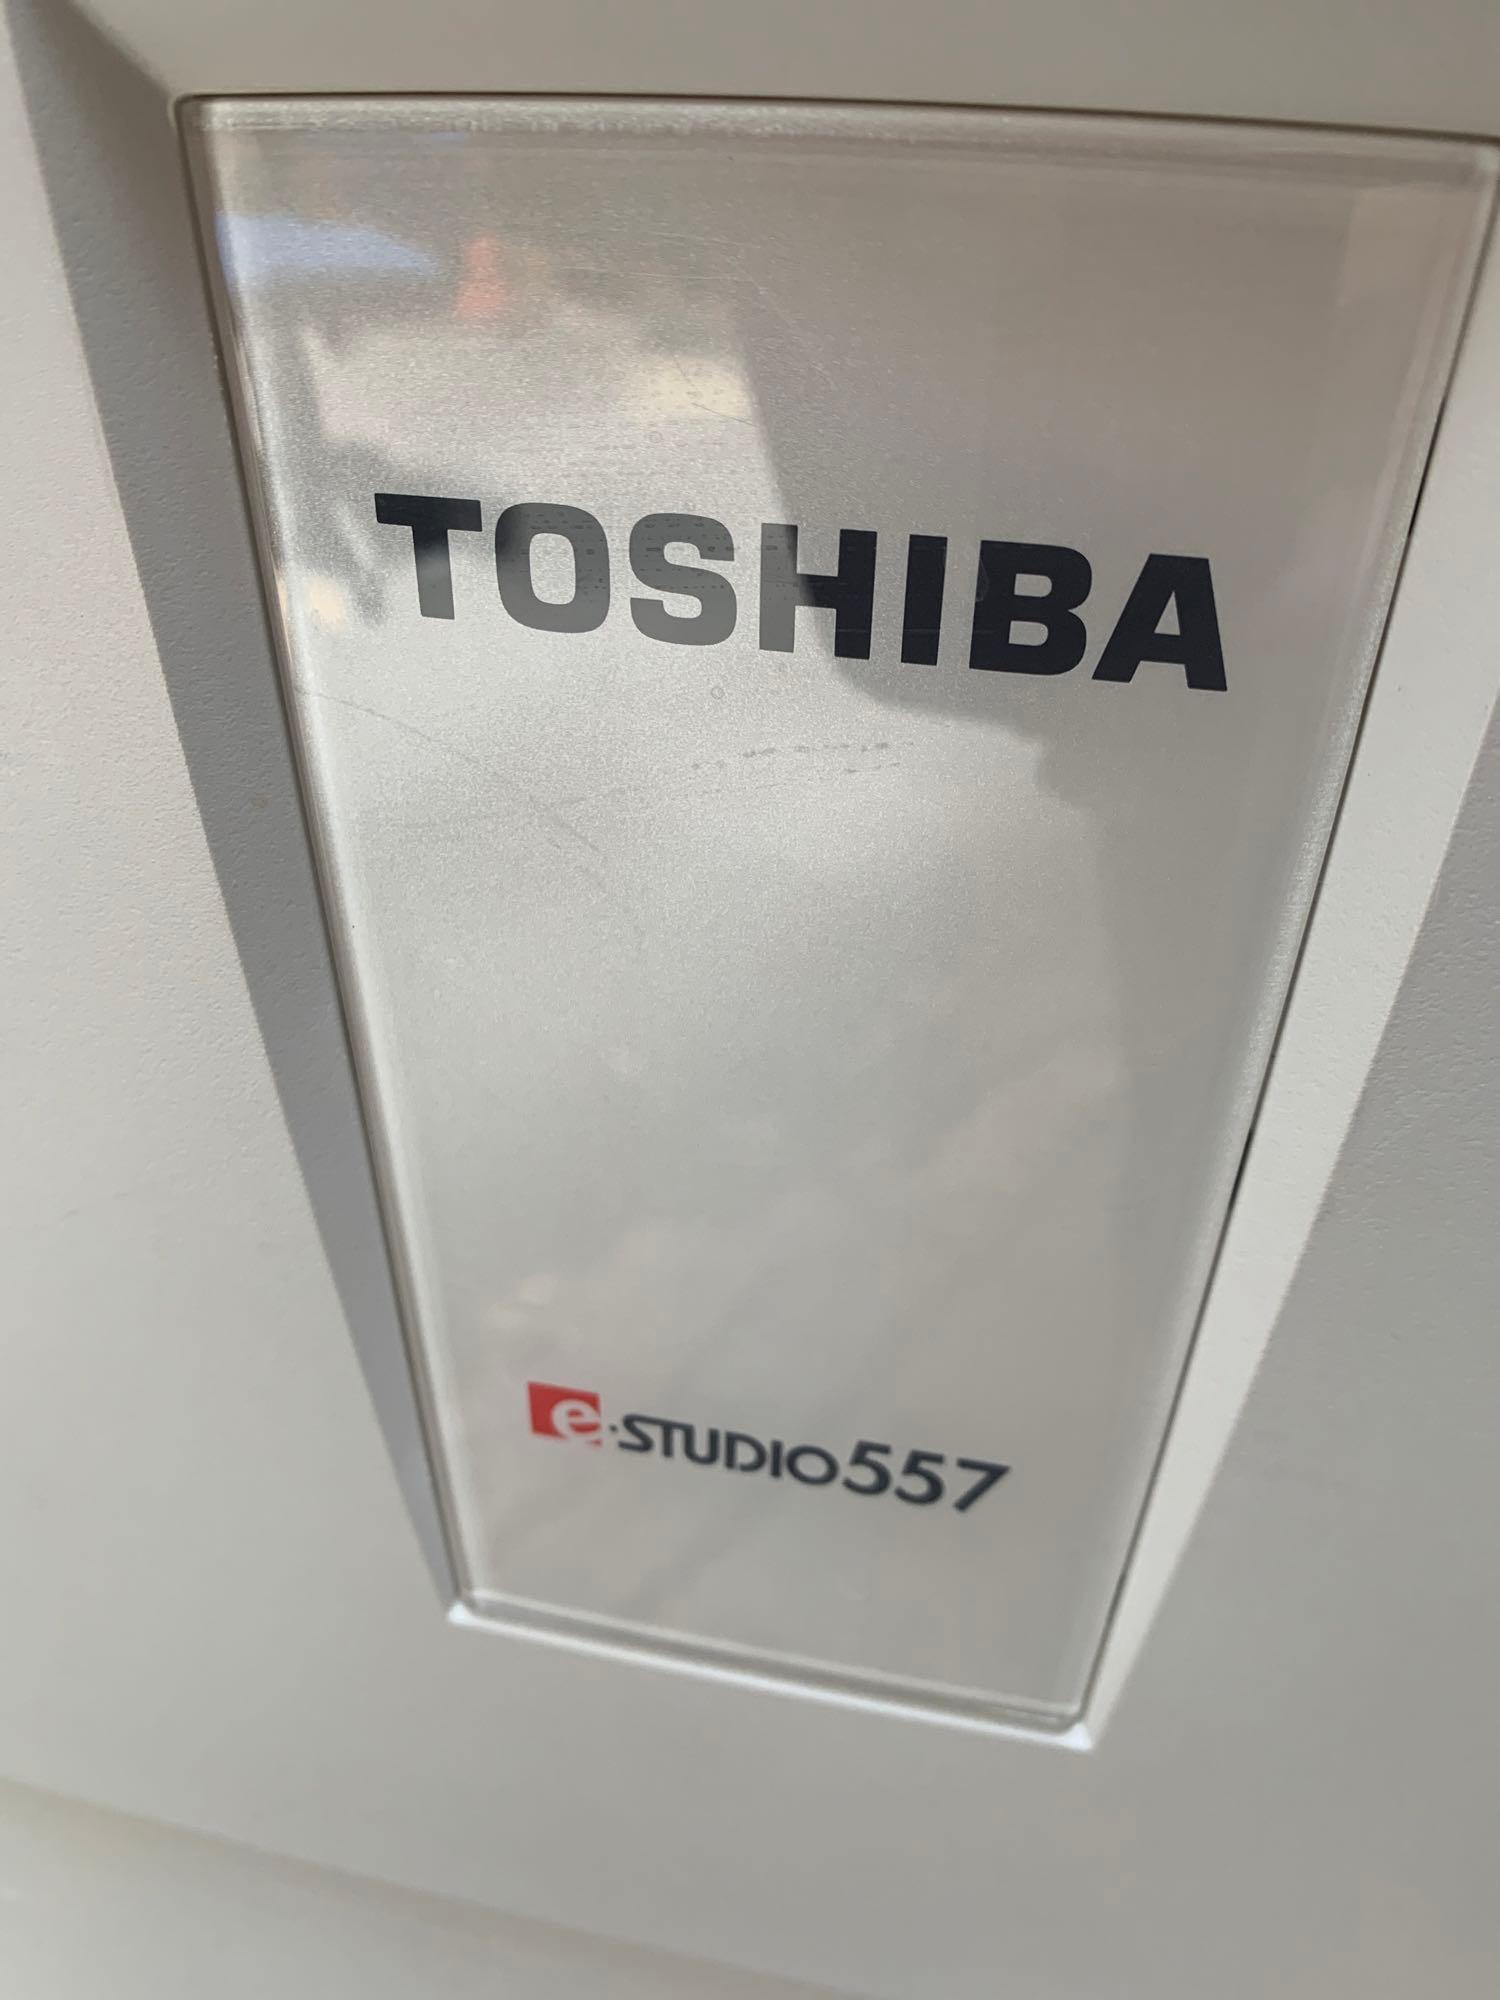 Toshiba e-Studio 557 Mono Laser Multifunction Printer / Copier